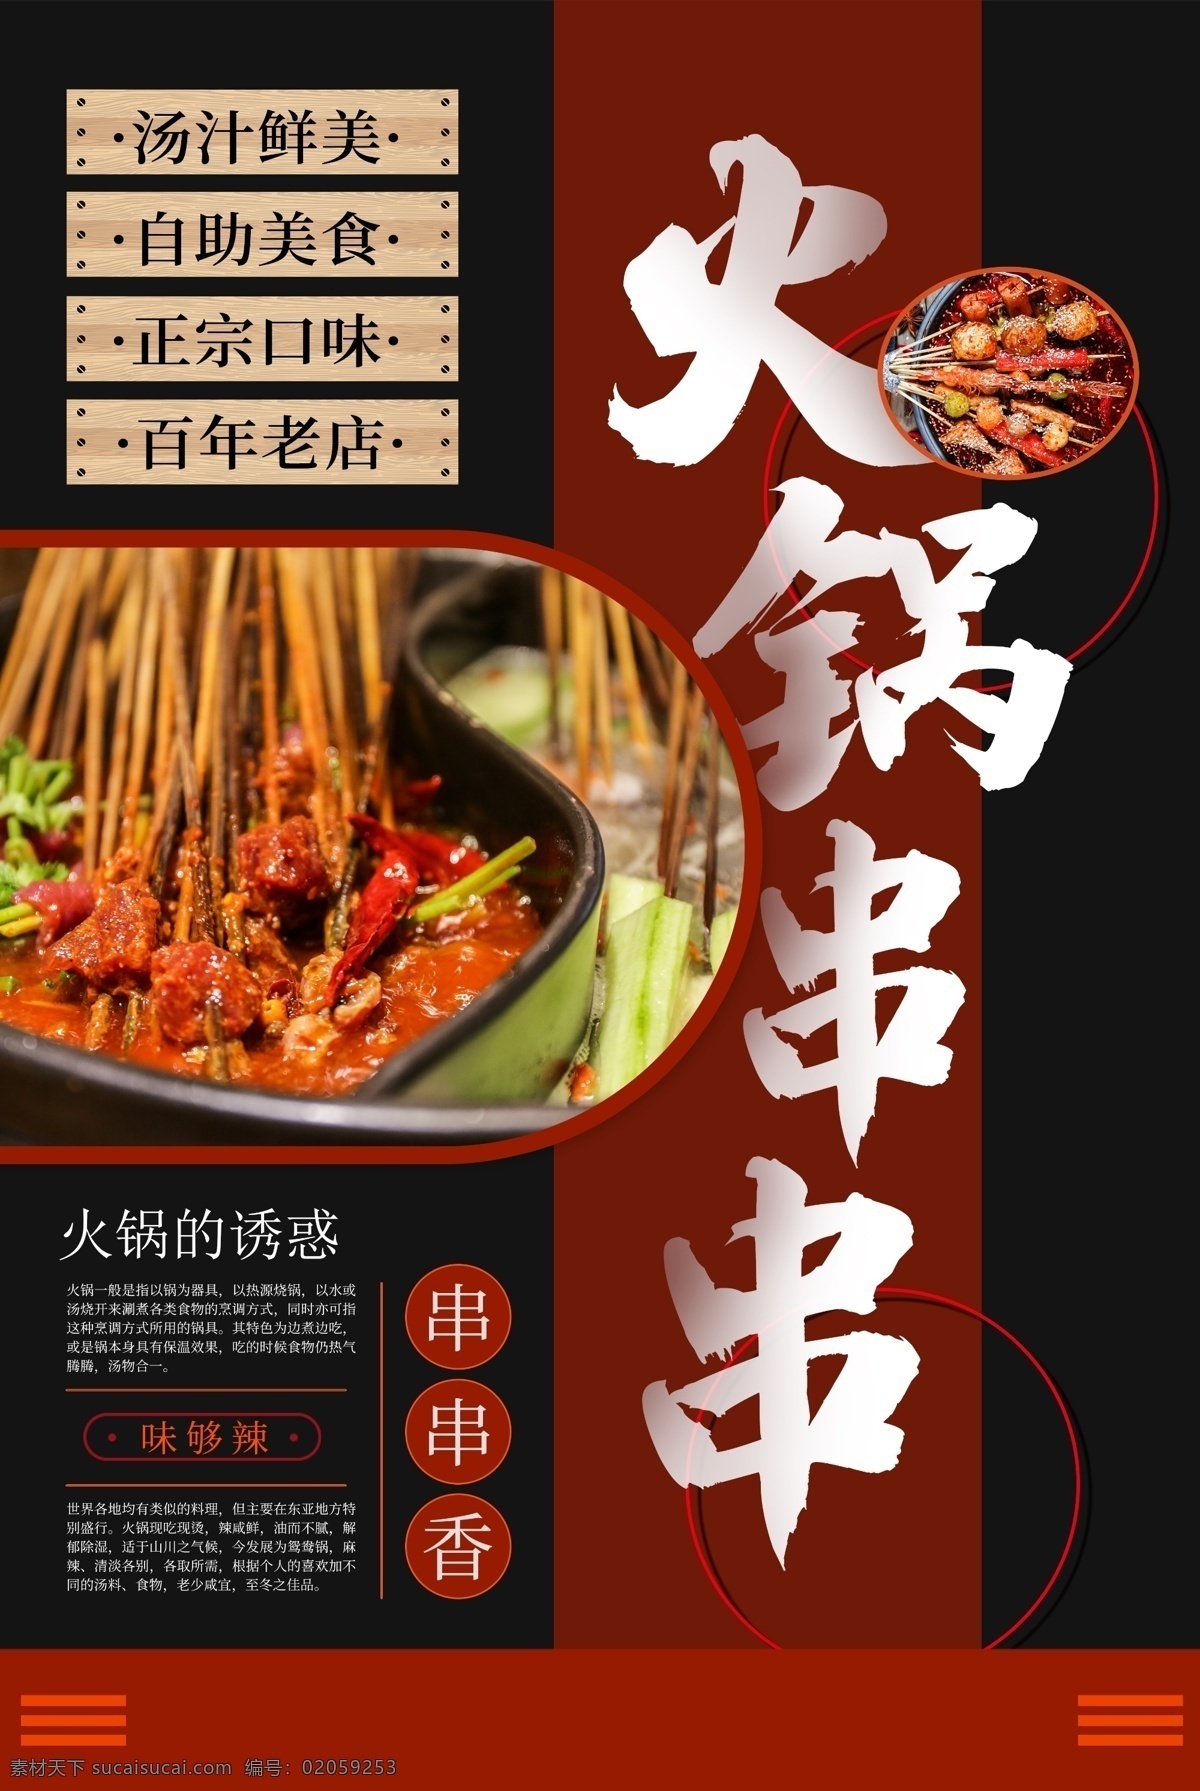 火锅 串串 美食 食 材 活动 宣传海报 食材 宣传 海报 餐饮美食 类